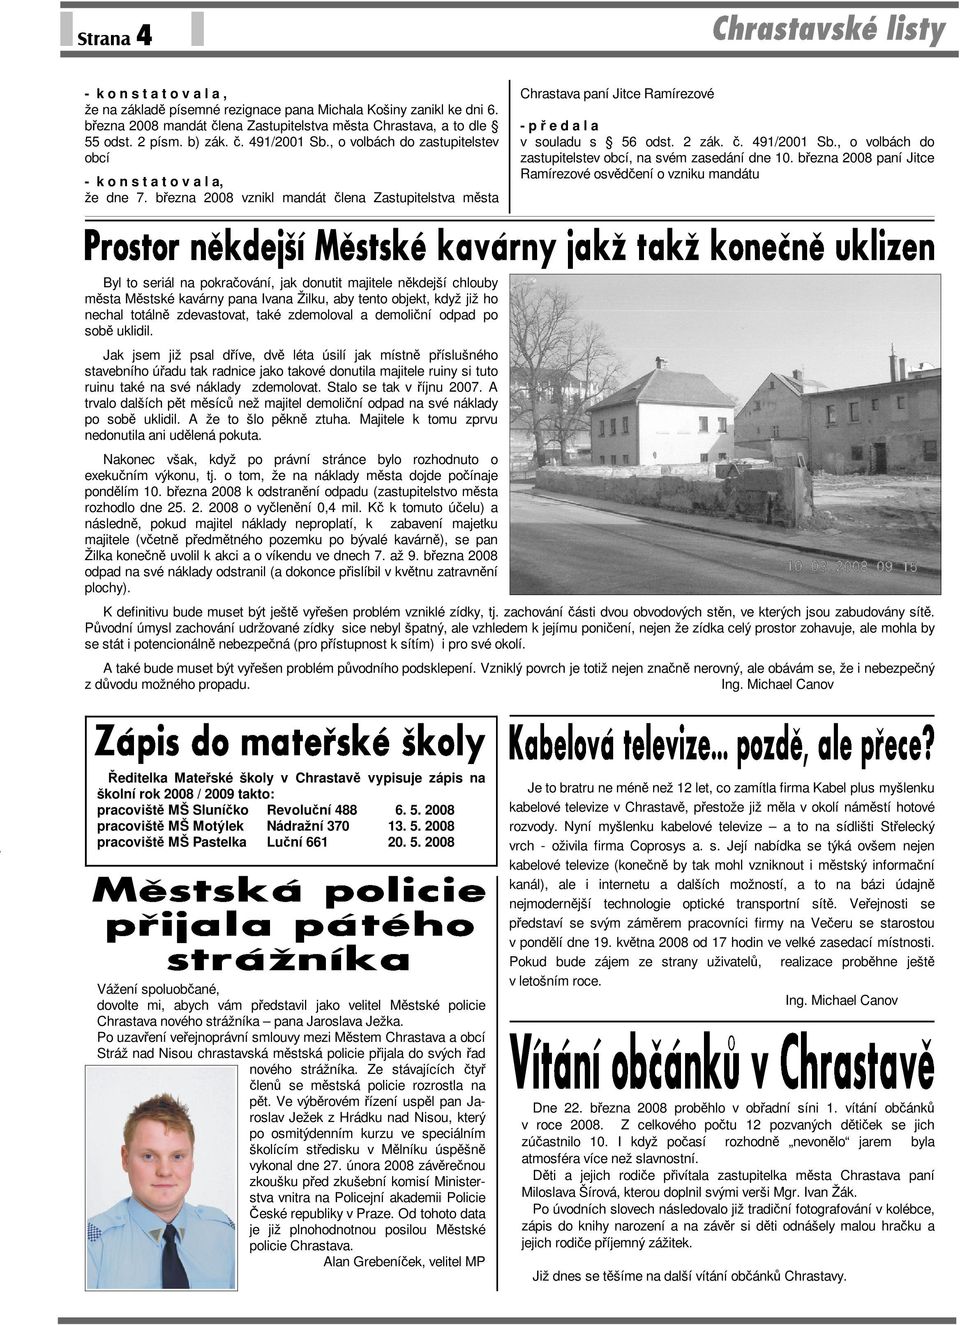 č. 491/2001 Sb., o volbách do zastupitelstev obcí, na svém zasedání dne 10.